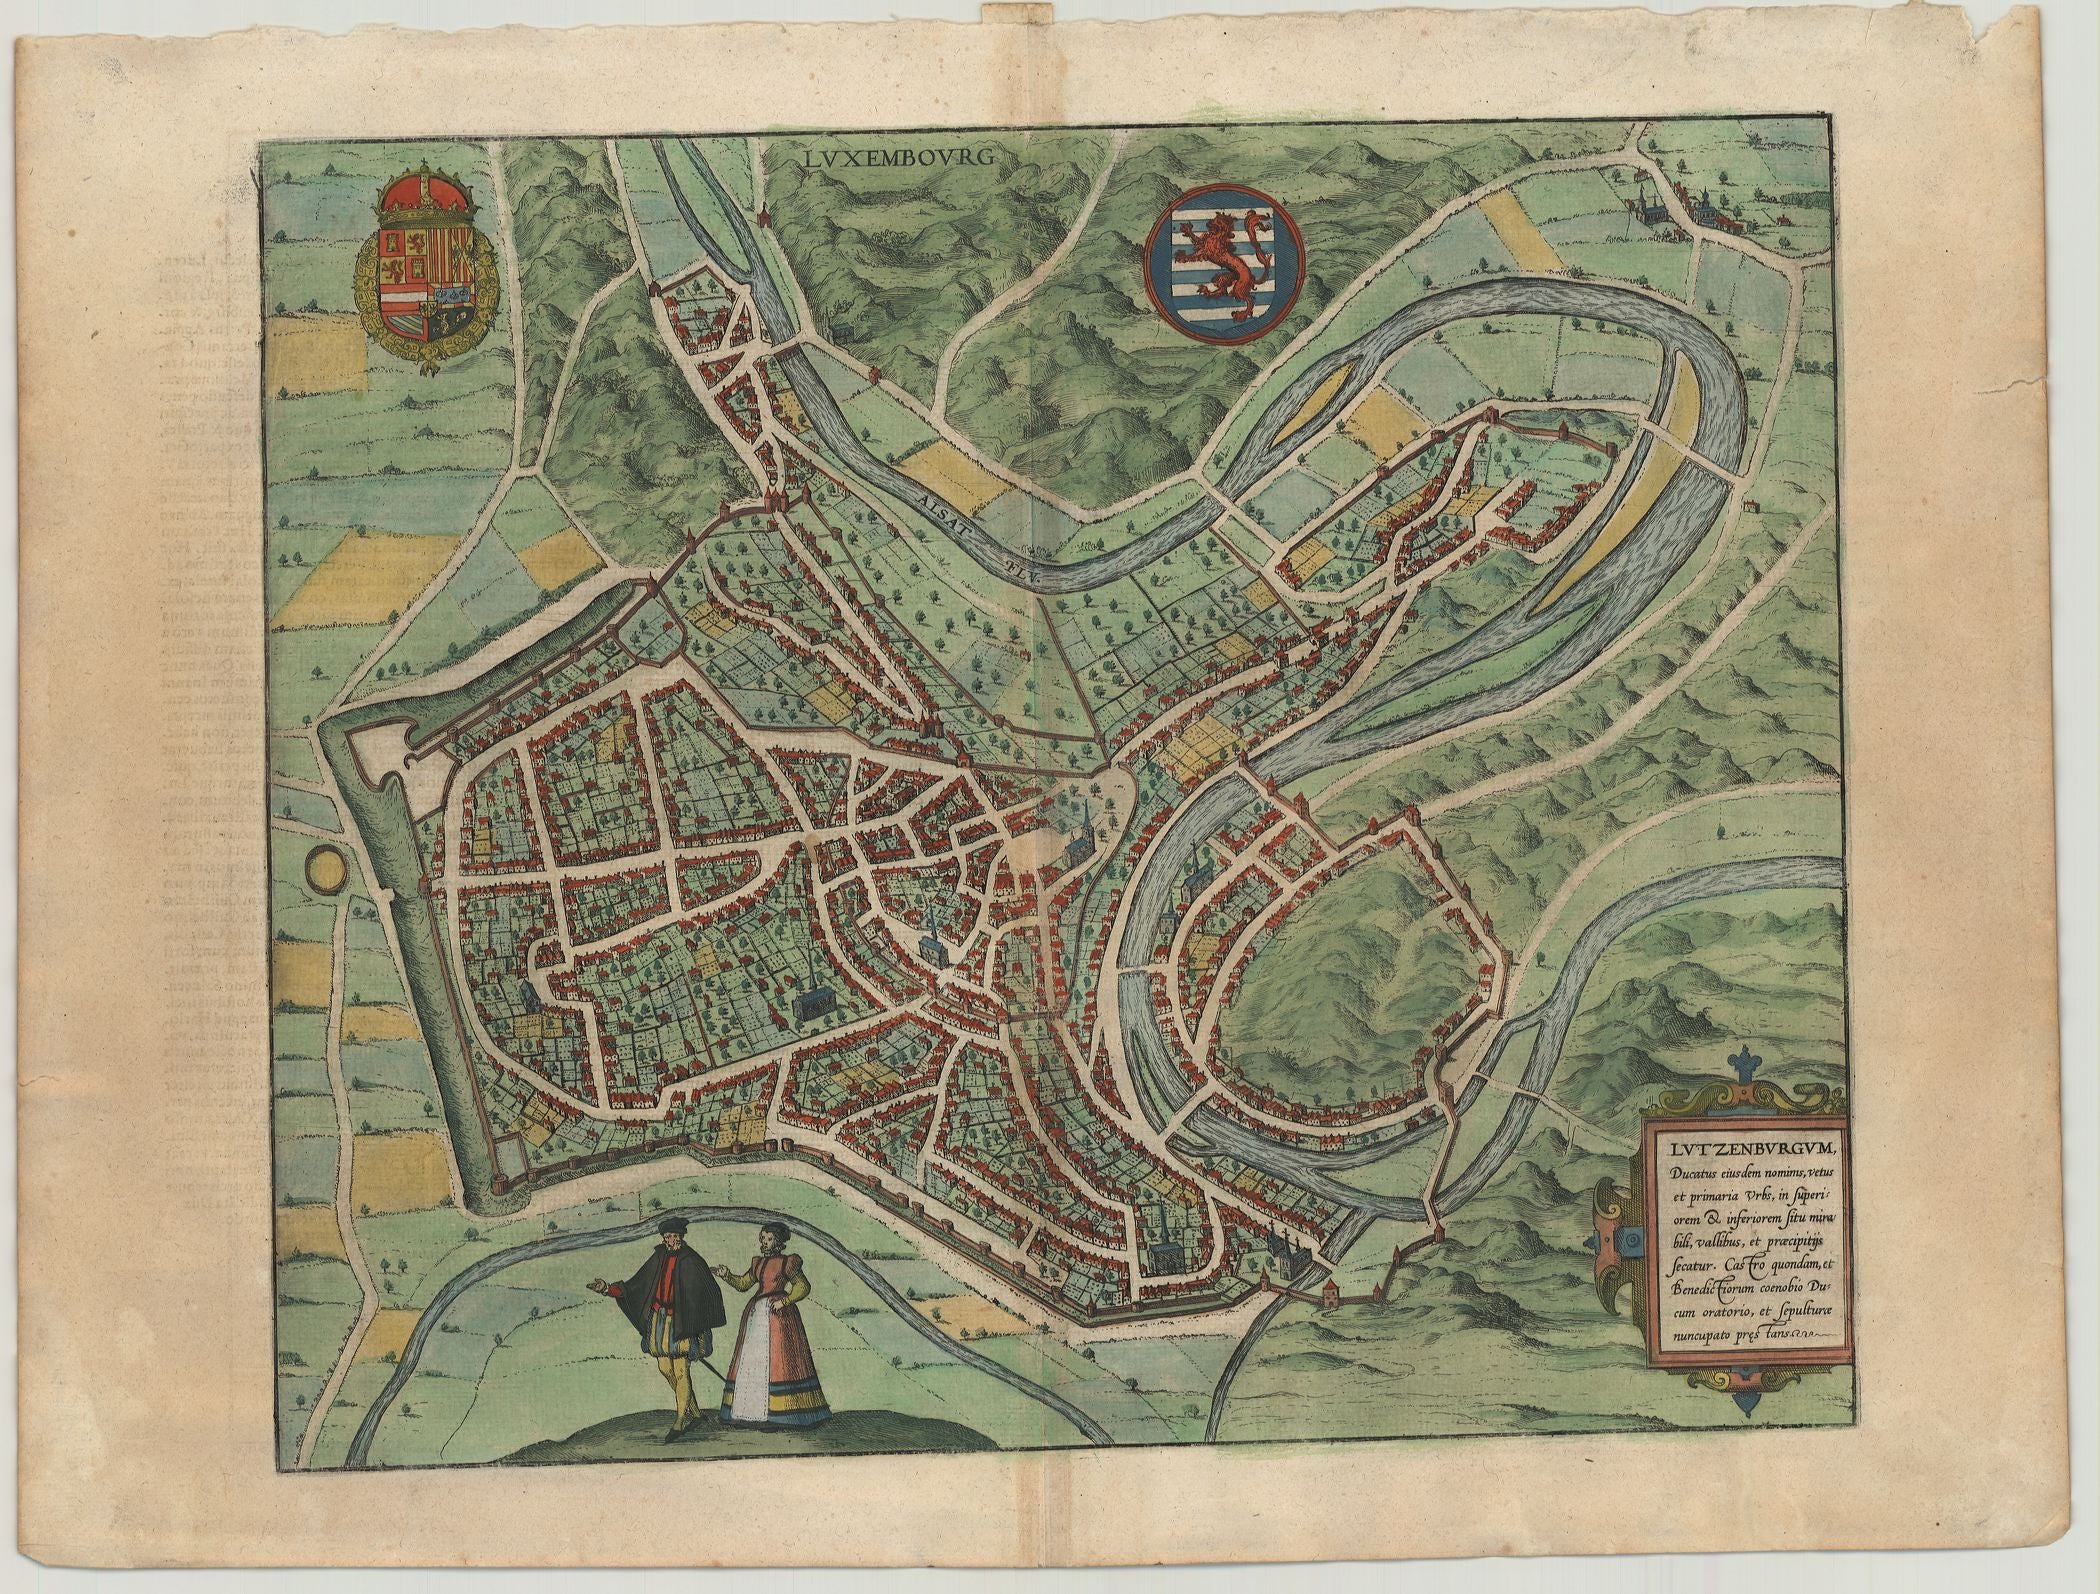 Braun & Hogenberg: Luxembourg - Lutzenburgum, Ducatus eiusdem Nominis, Vetus et Primaria Urbs 1581